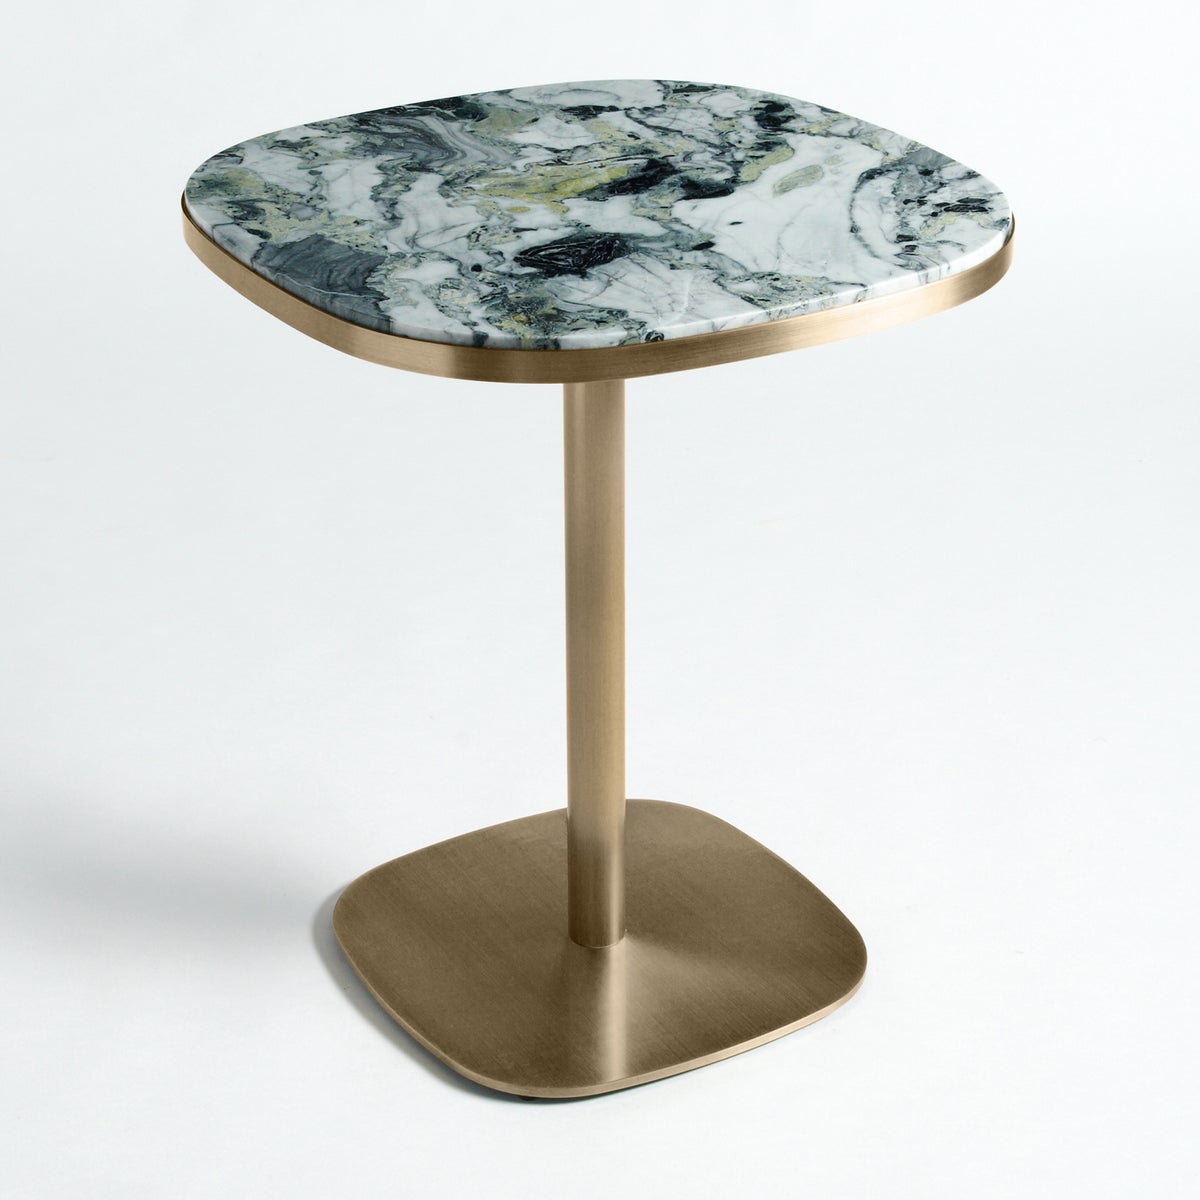 Стол ис. Lixfeld стол. Столик бистро фото. Диванный столик стеклянный ларедут.